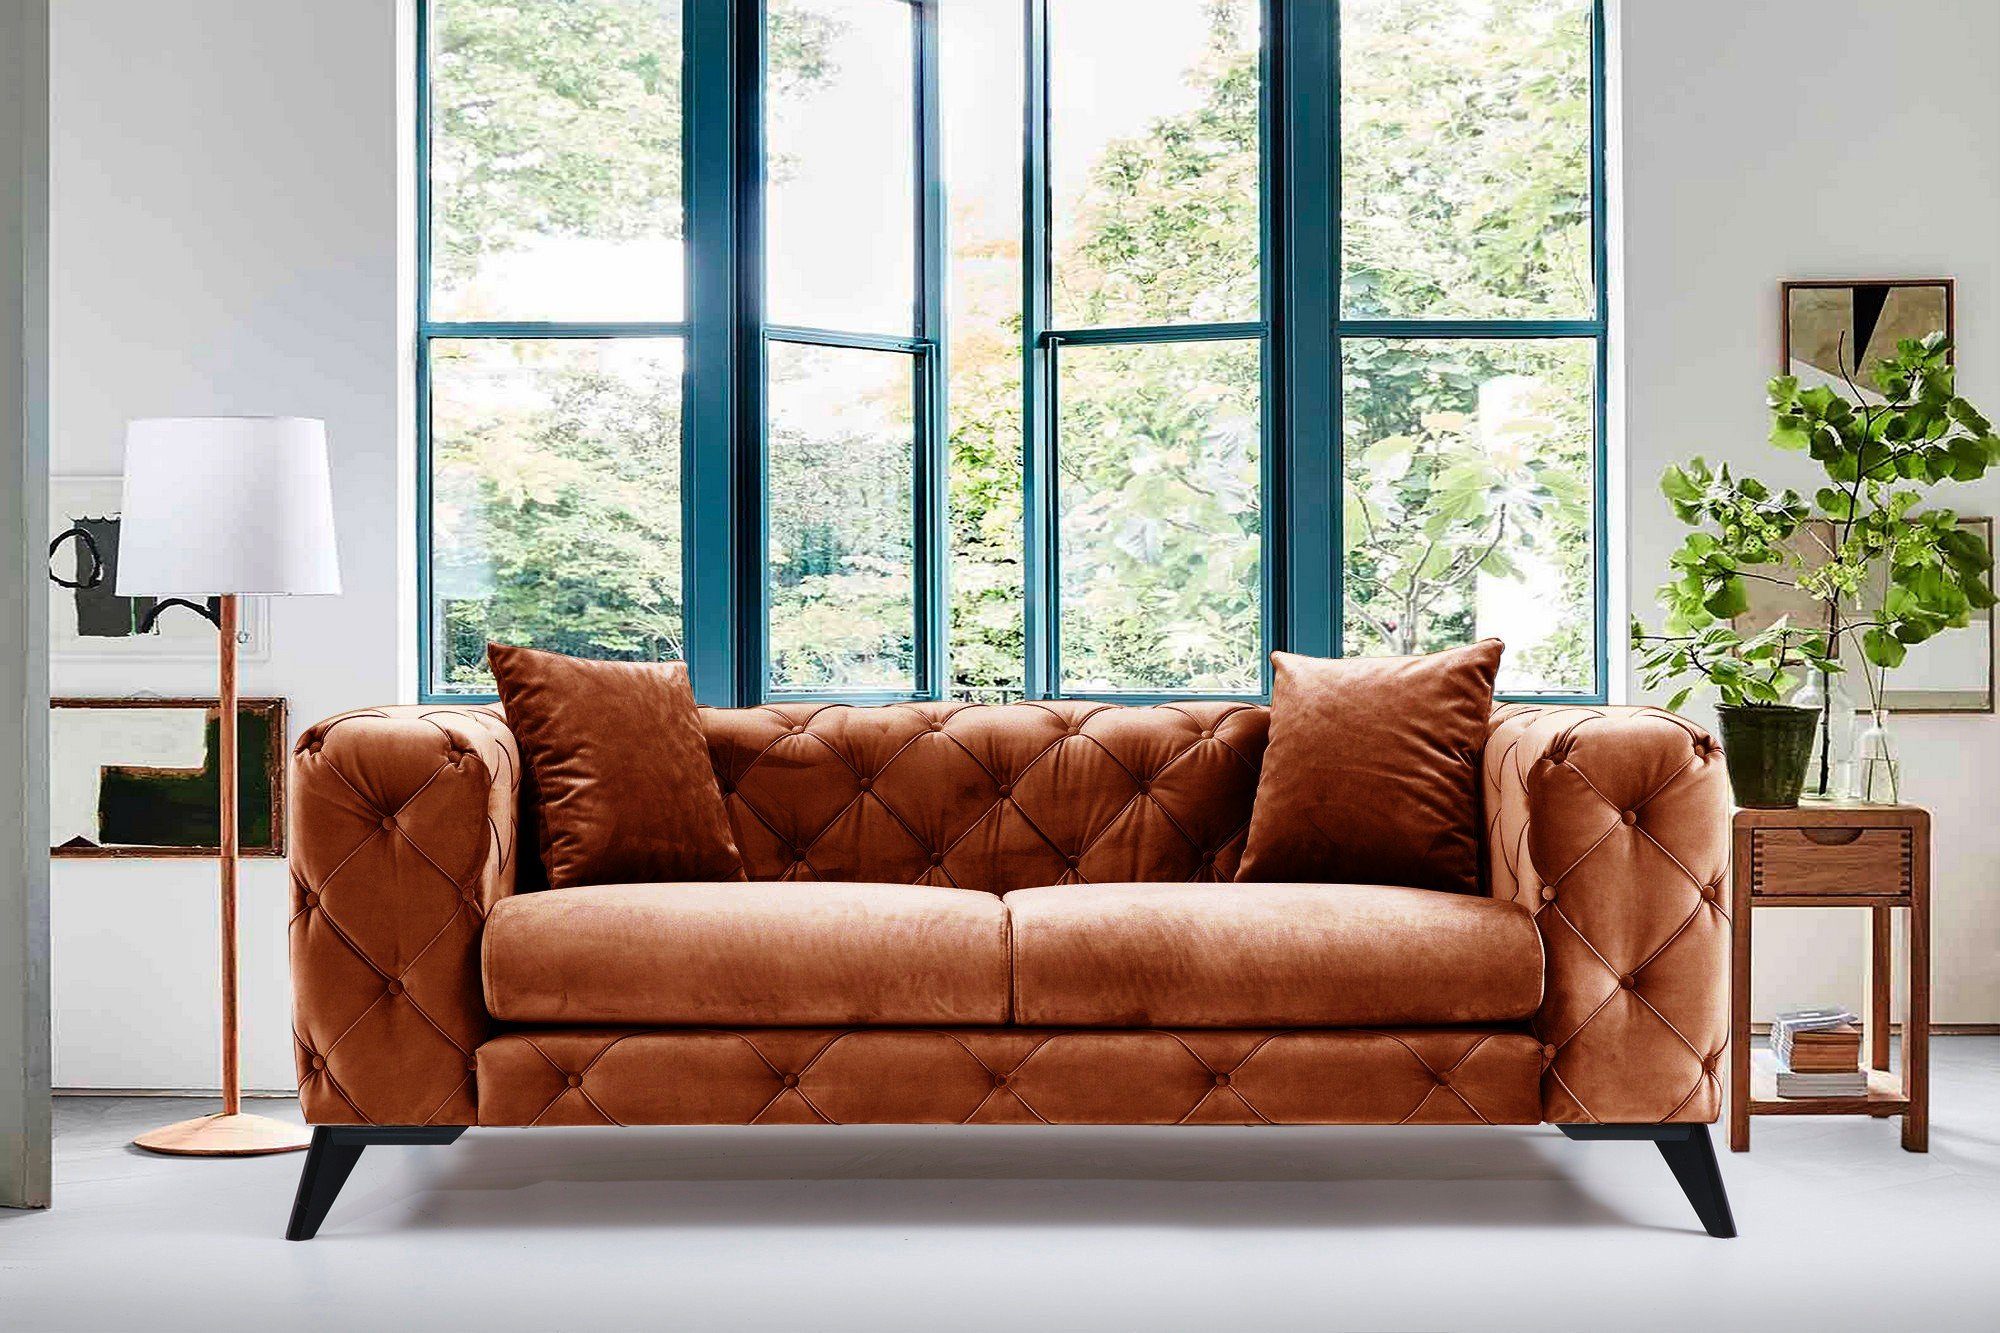 Skye Decor Sofa HLN1131 45 cm x 45 cm